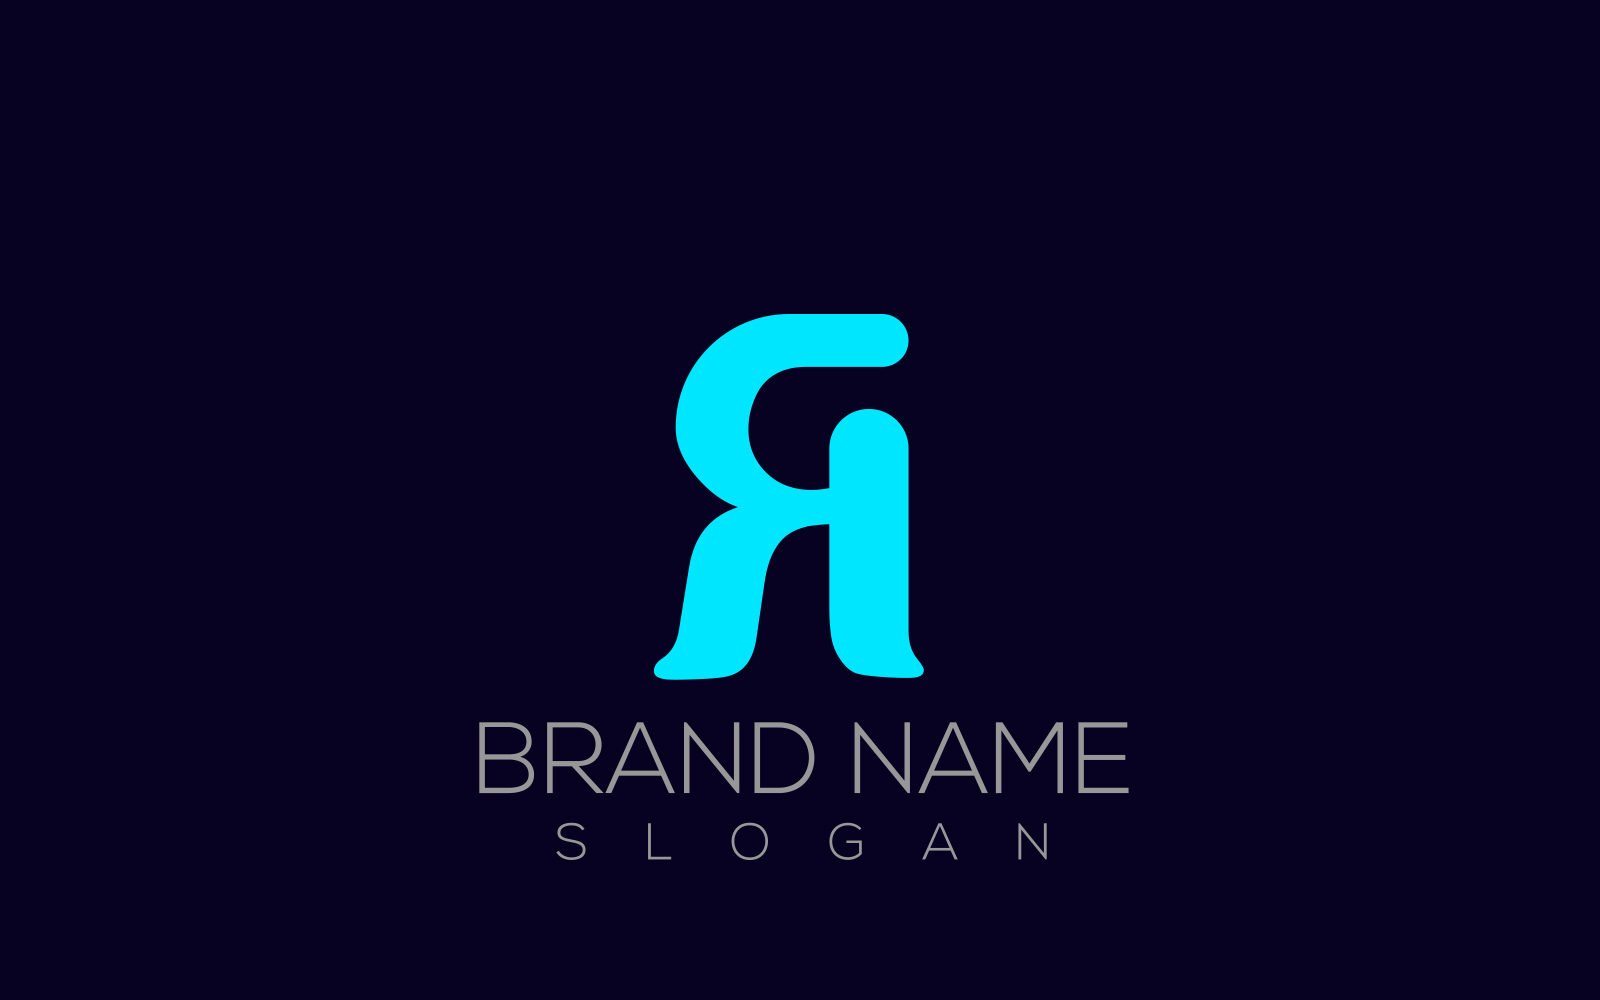 R Logo | Reverse R Letter Logo Design